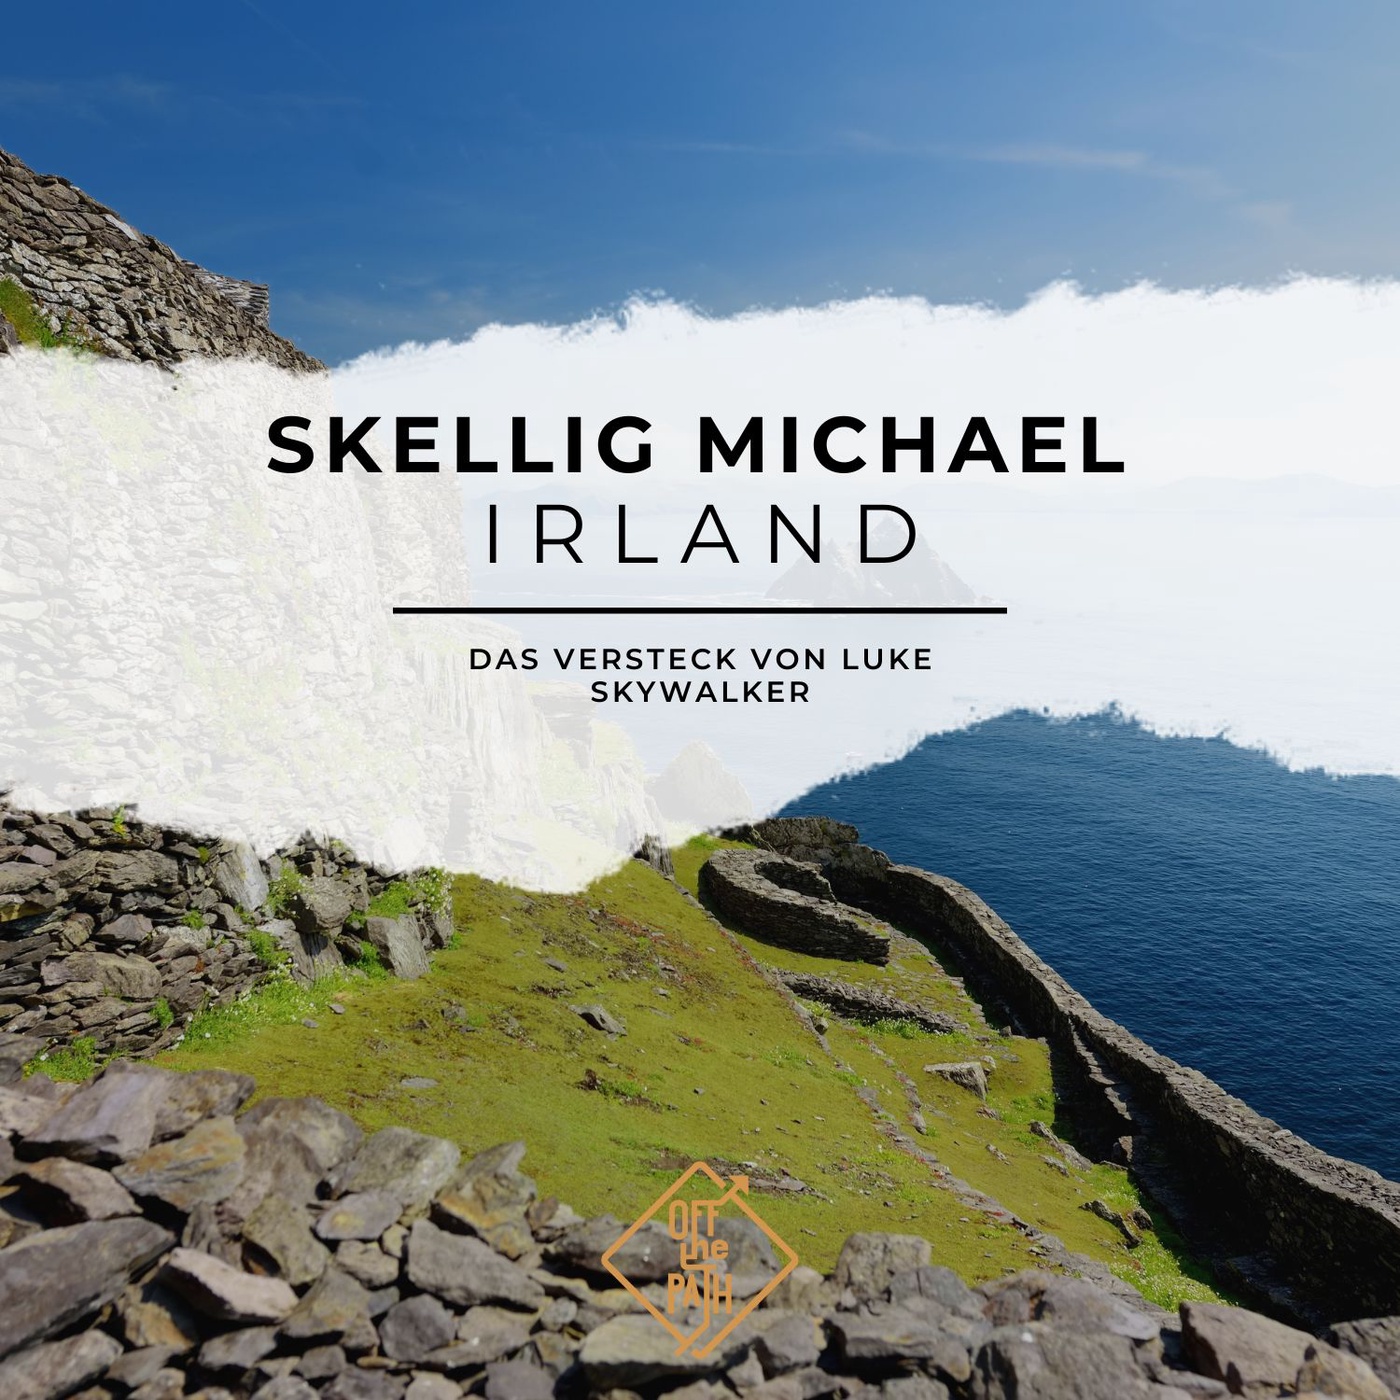 Das Versteck von Luke Skywalker: Eine Reise nach Skellig Michael, Irland